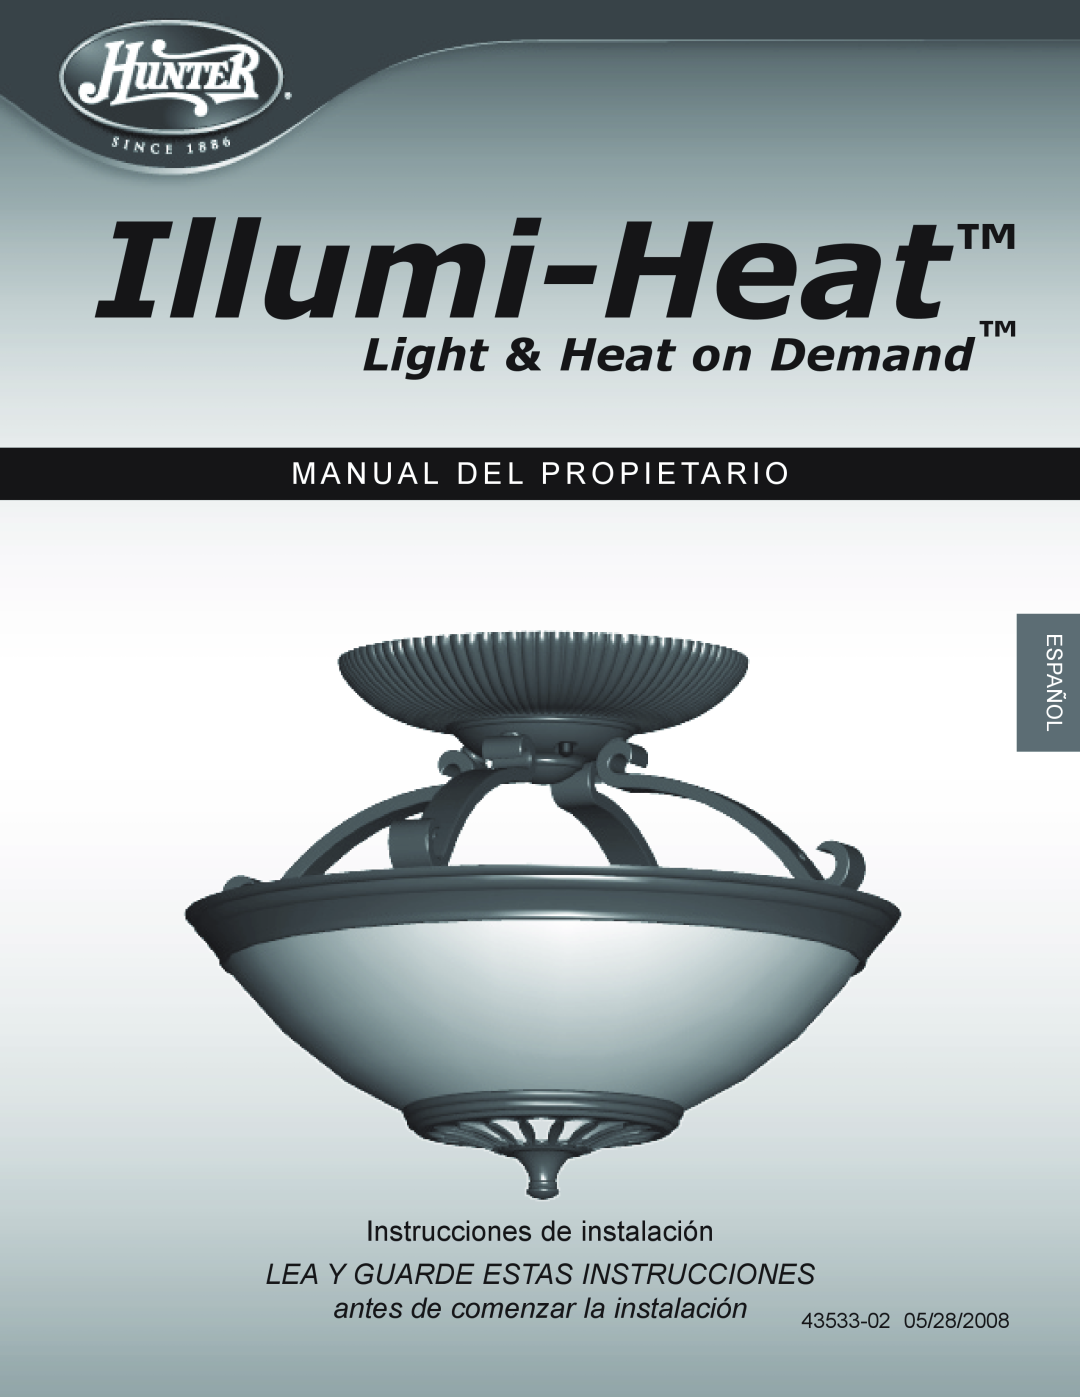 Hunter Fan Illumi-Heat owner manual M A N U A L D E L P R O P I E Ta R I O, Instrucciones de instalación, Español 